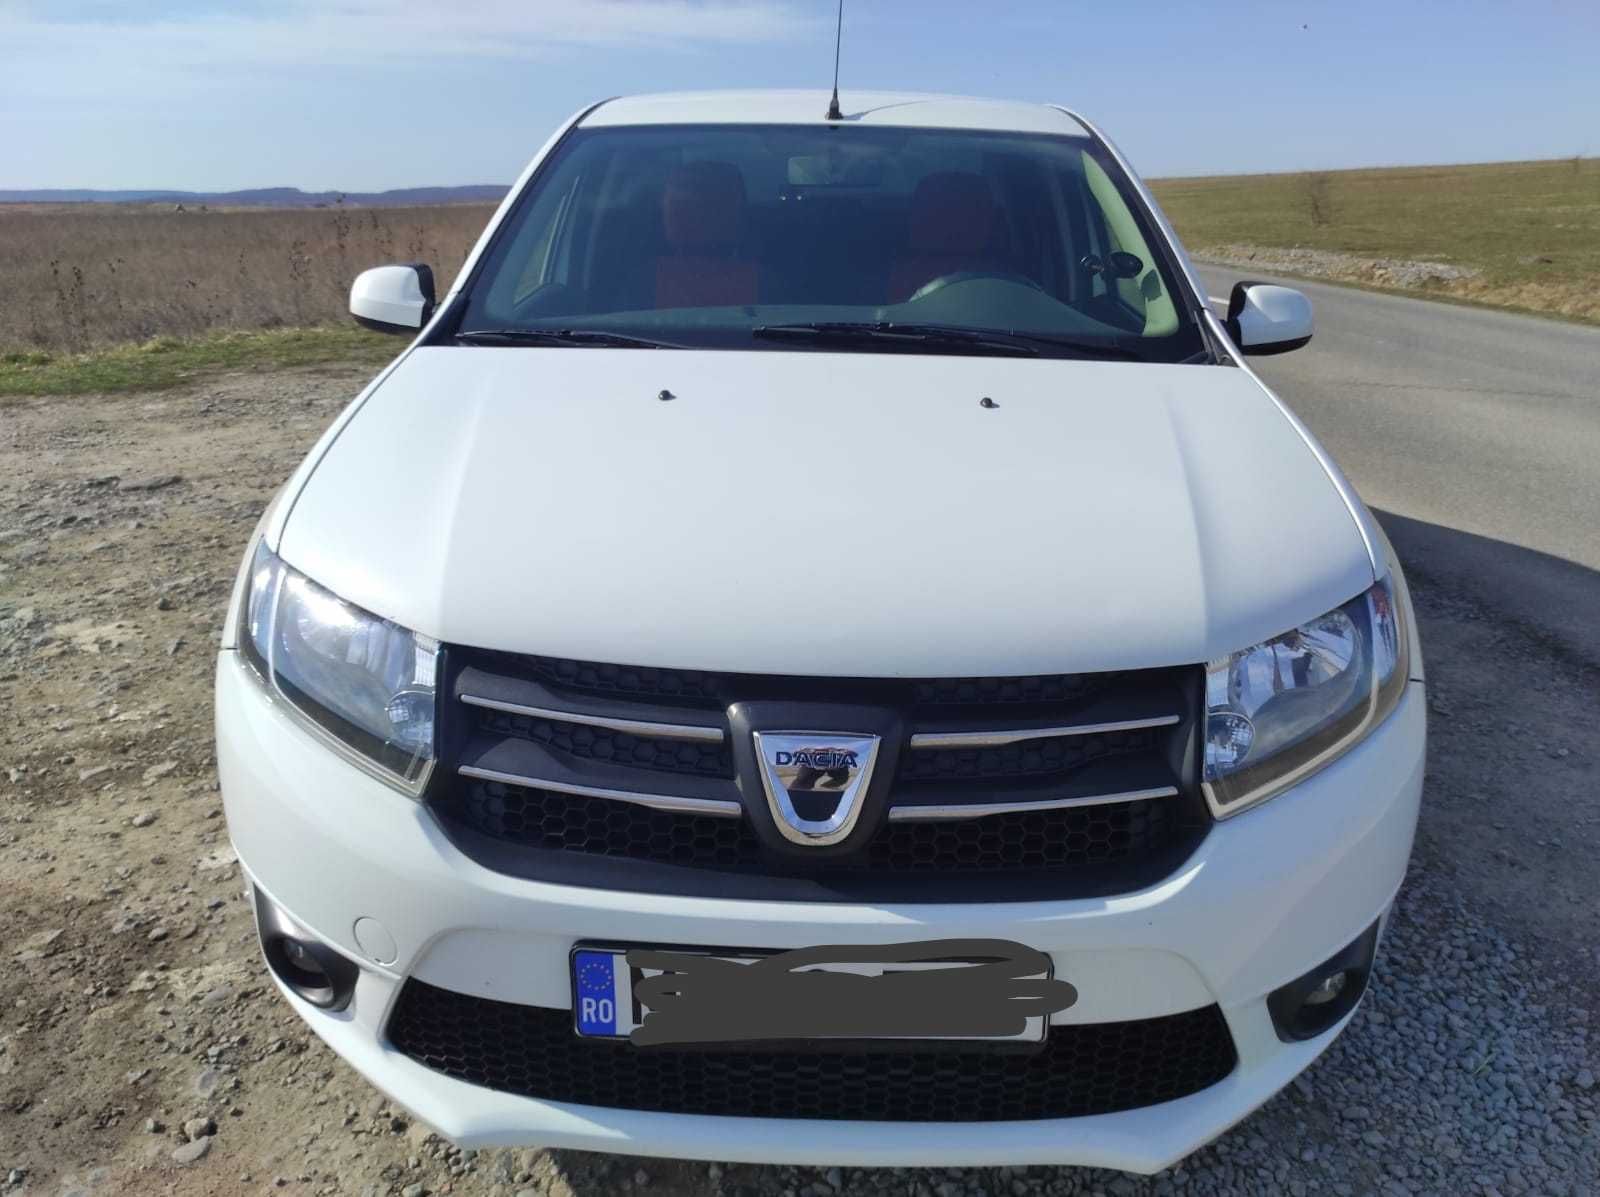 Autoturisme Dacia